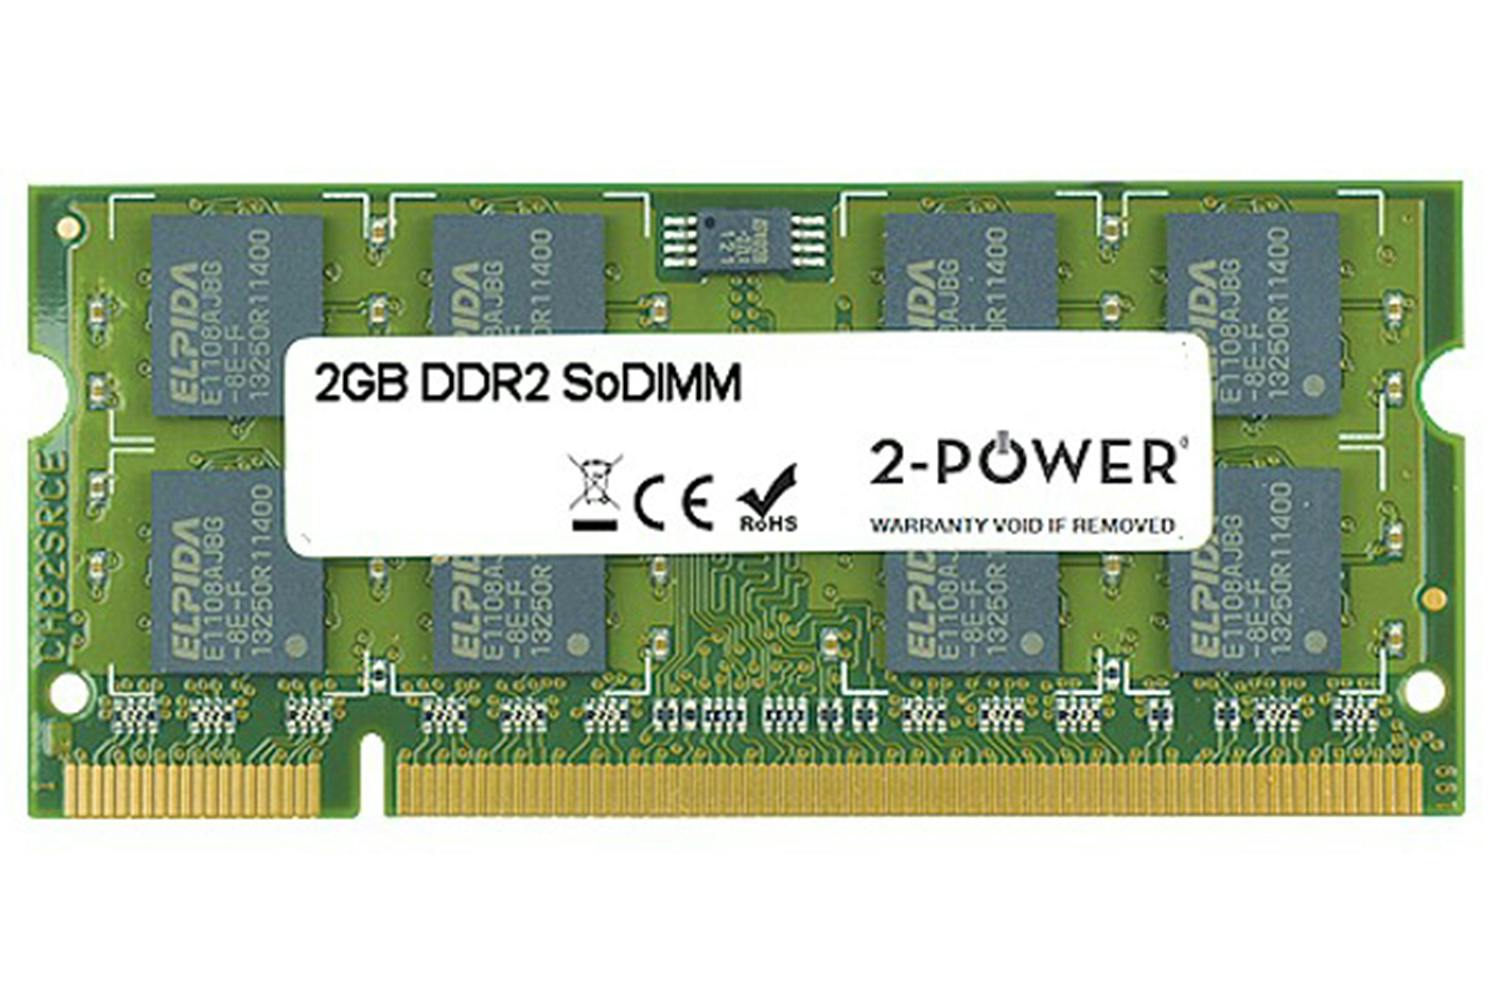 Ddr2 dimm купить. SODIMM ddr2 2gb. Ddr2 4 GB SODIMM so. Ddr3 4gb Memory Power. So DIMM ddr3 4gb.